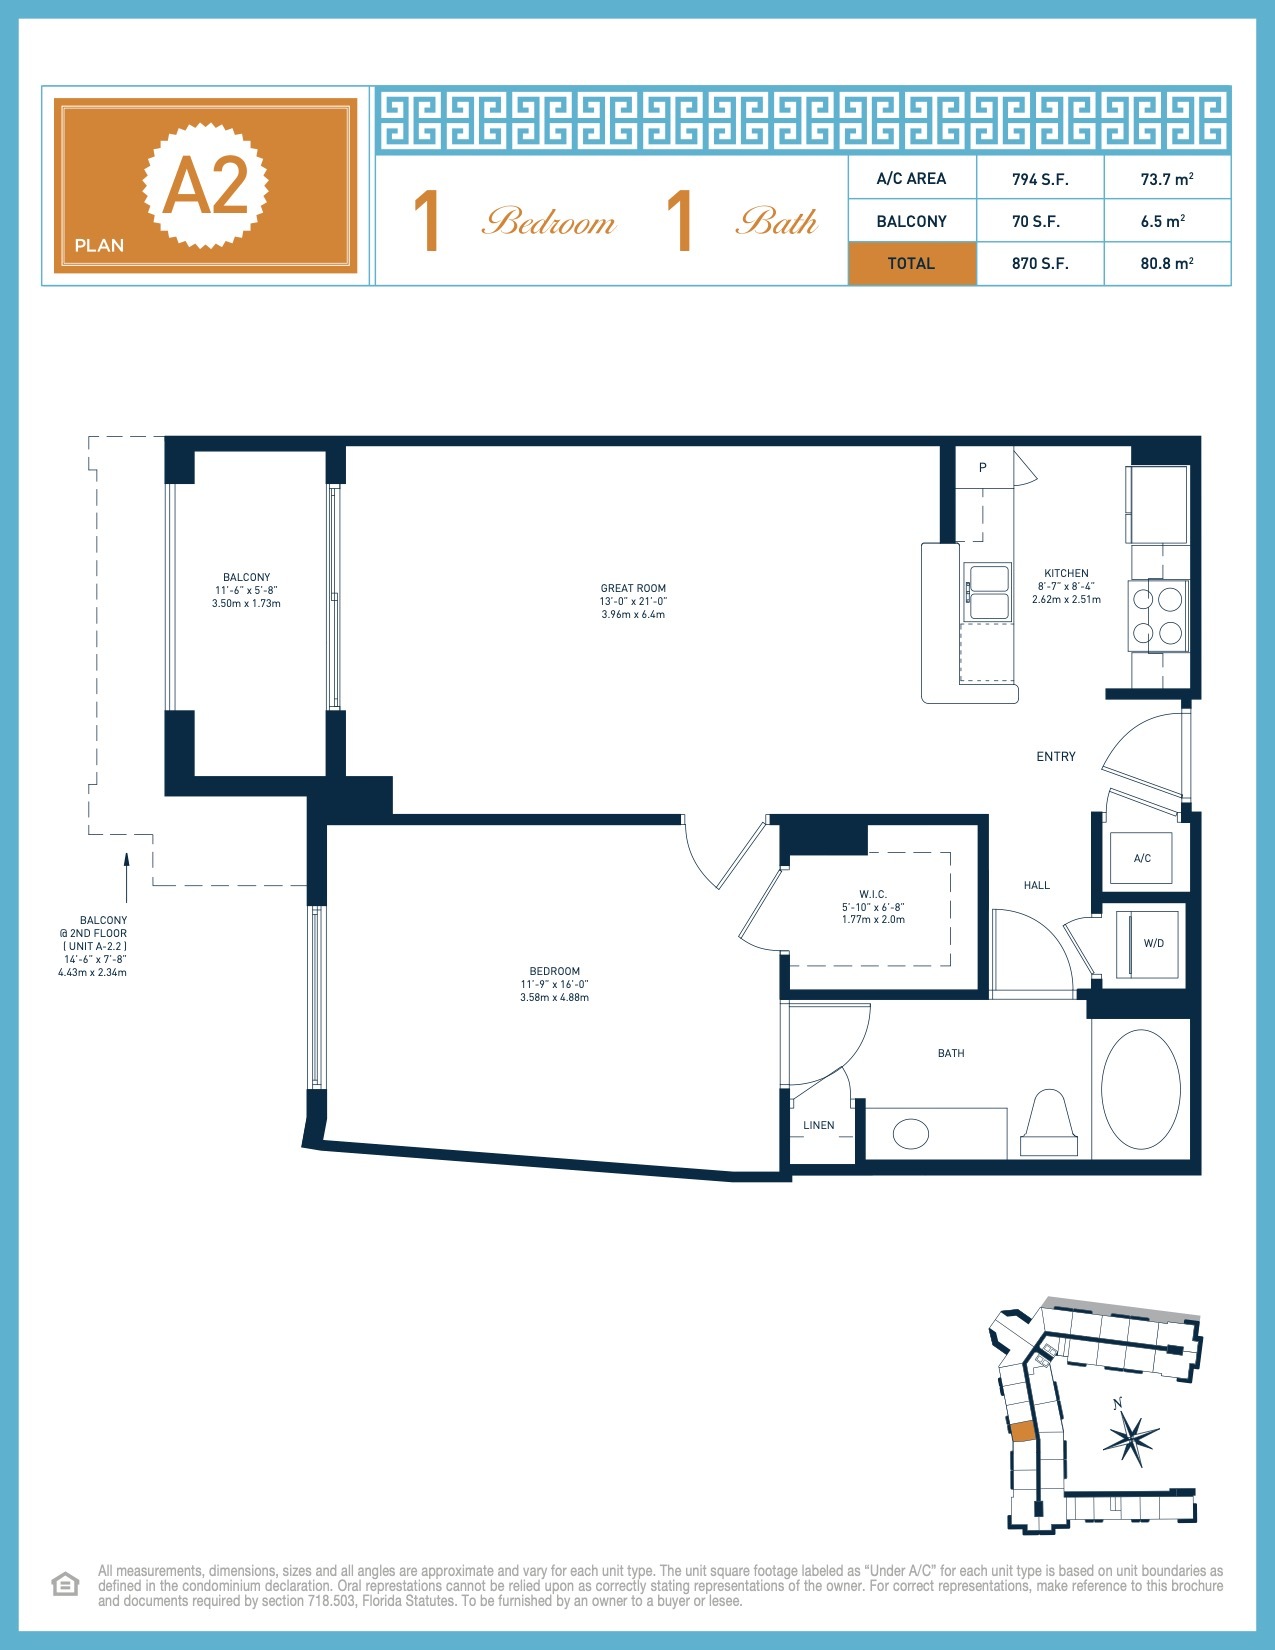 Floor Plan for CUSTOM_NO_CATEGORY_MODE, A2